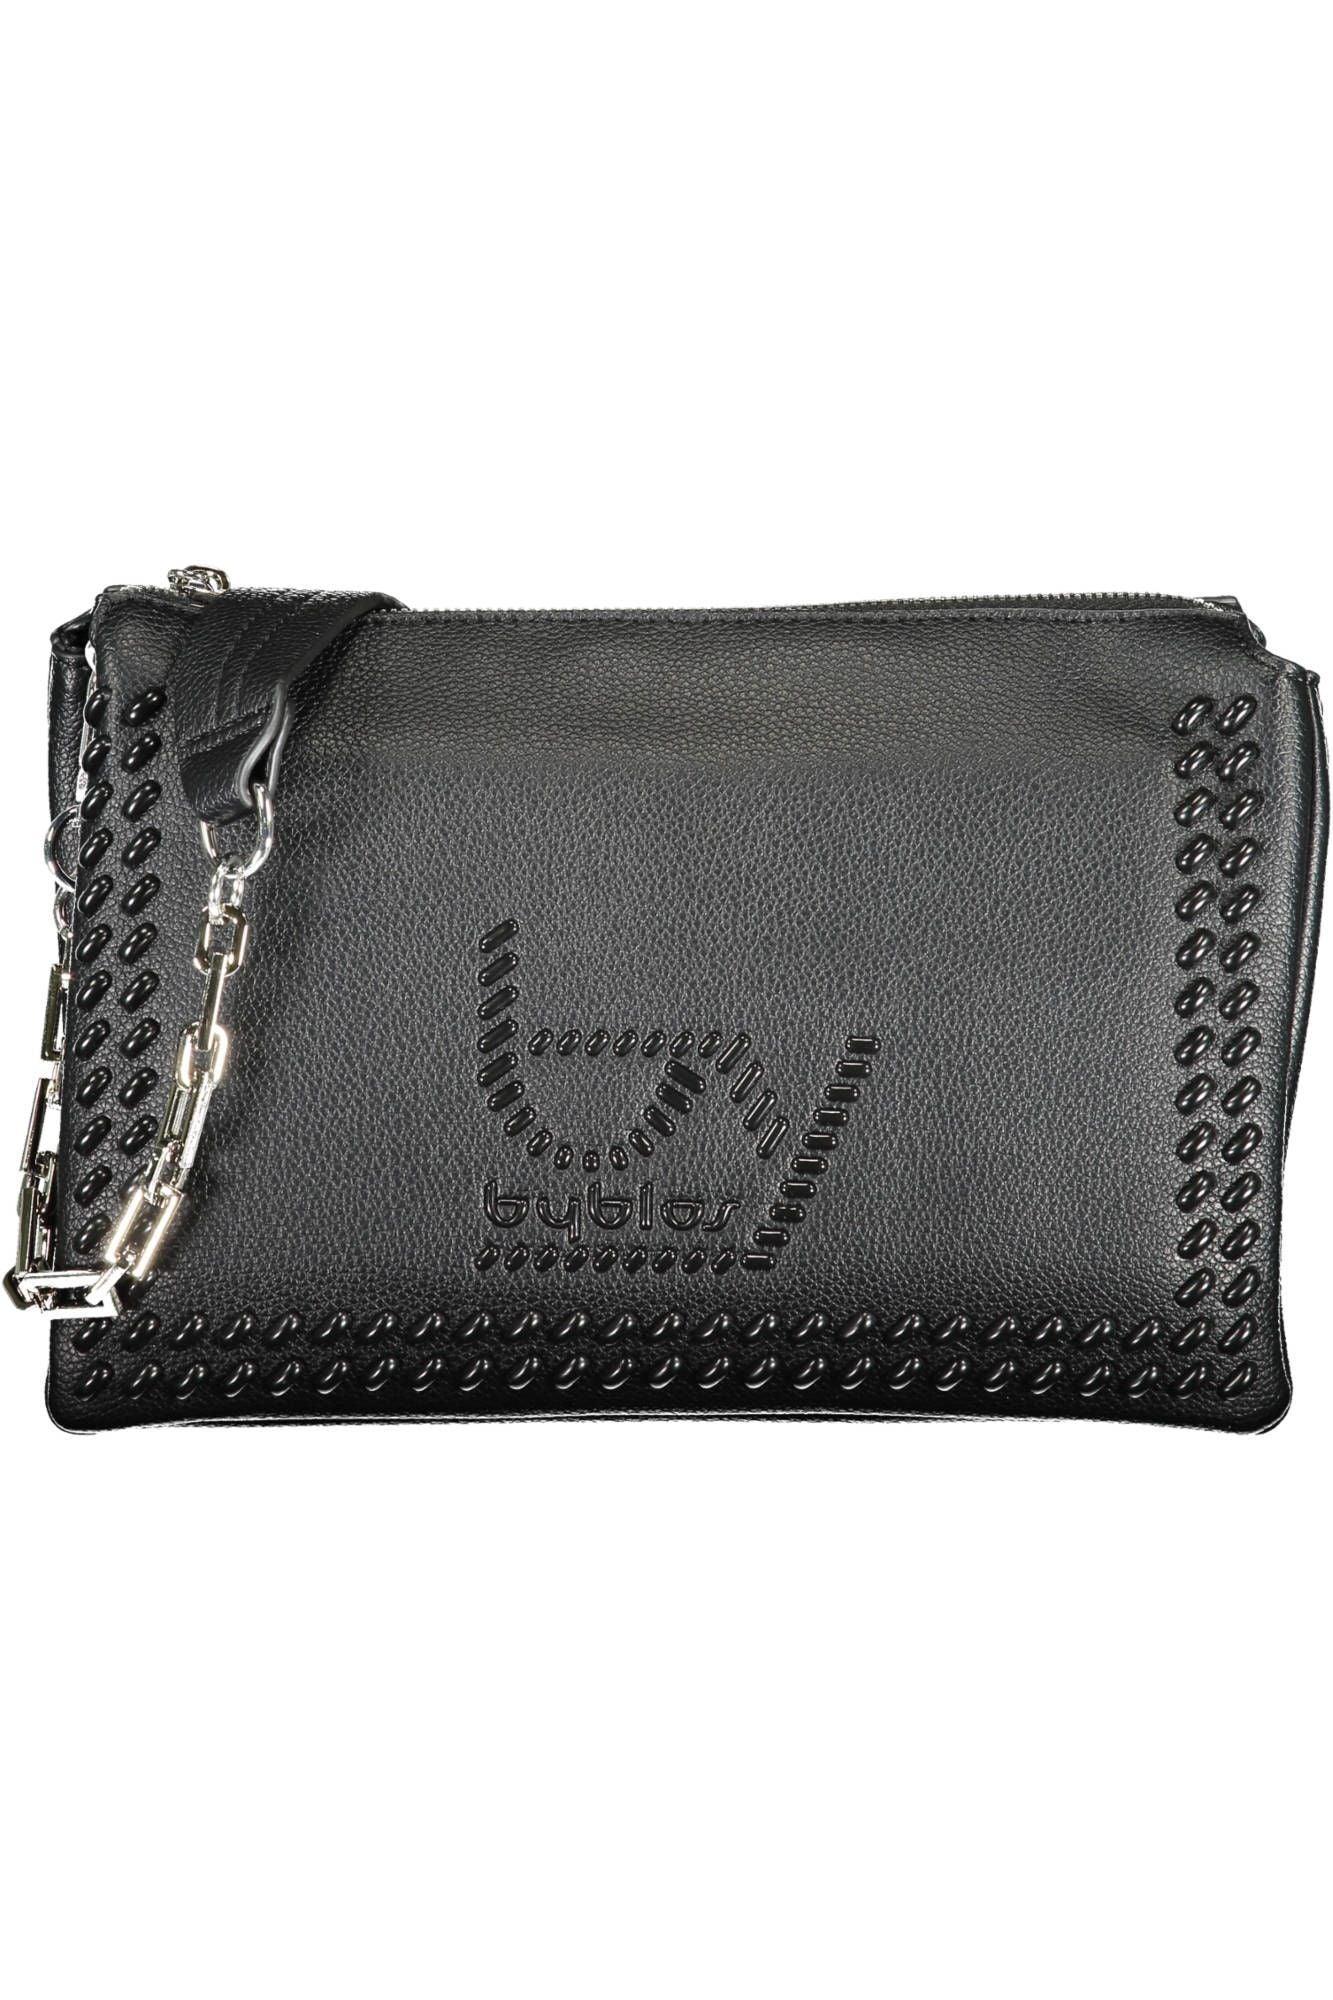 BYBLOS Elegant Chain-Handle Black Shoulder Bag - PER.FASHION